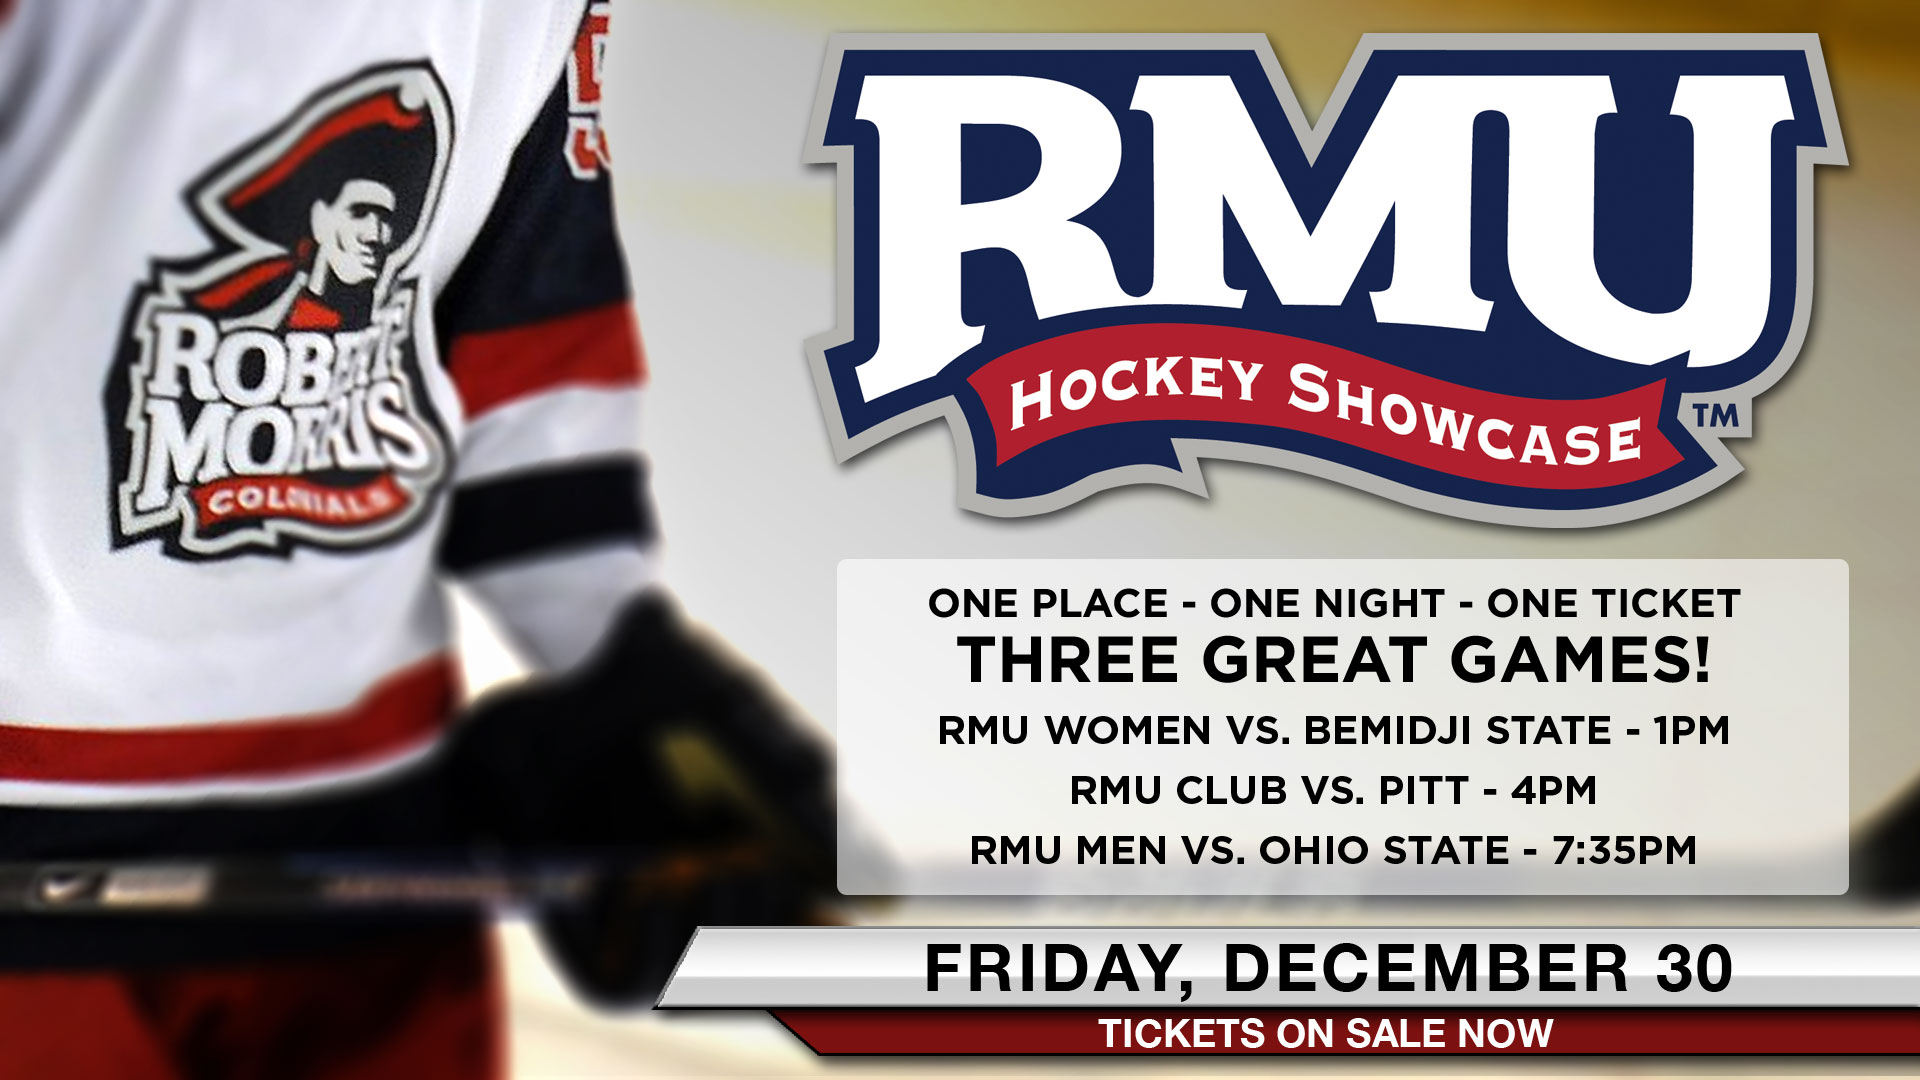 RMU Hockey Showcase